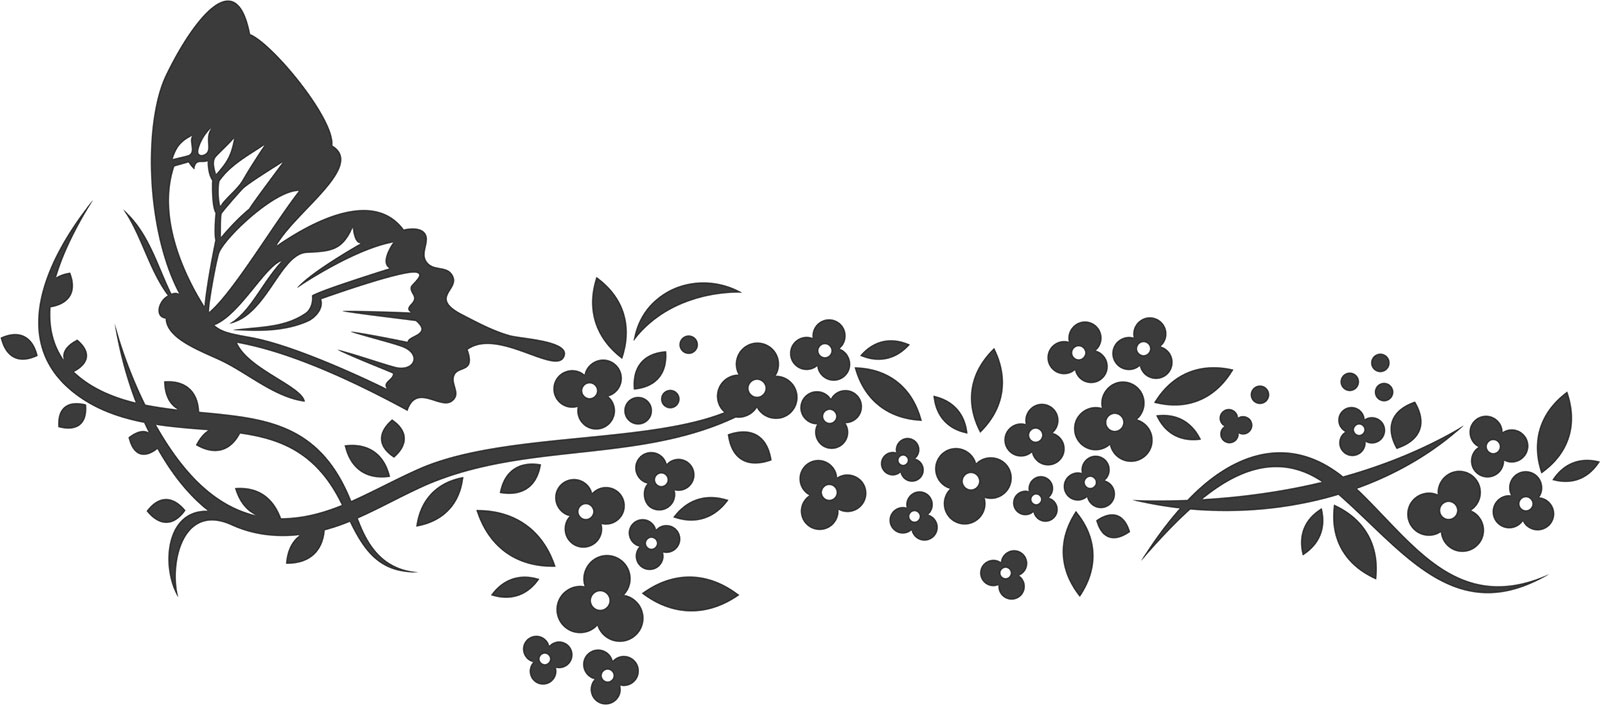 花のイラスト フリー素材 白黒 モノクロno 359 白黒 茎葉 蝶